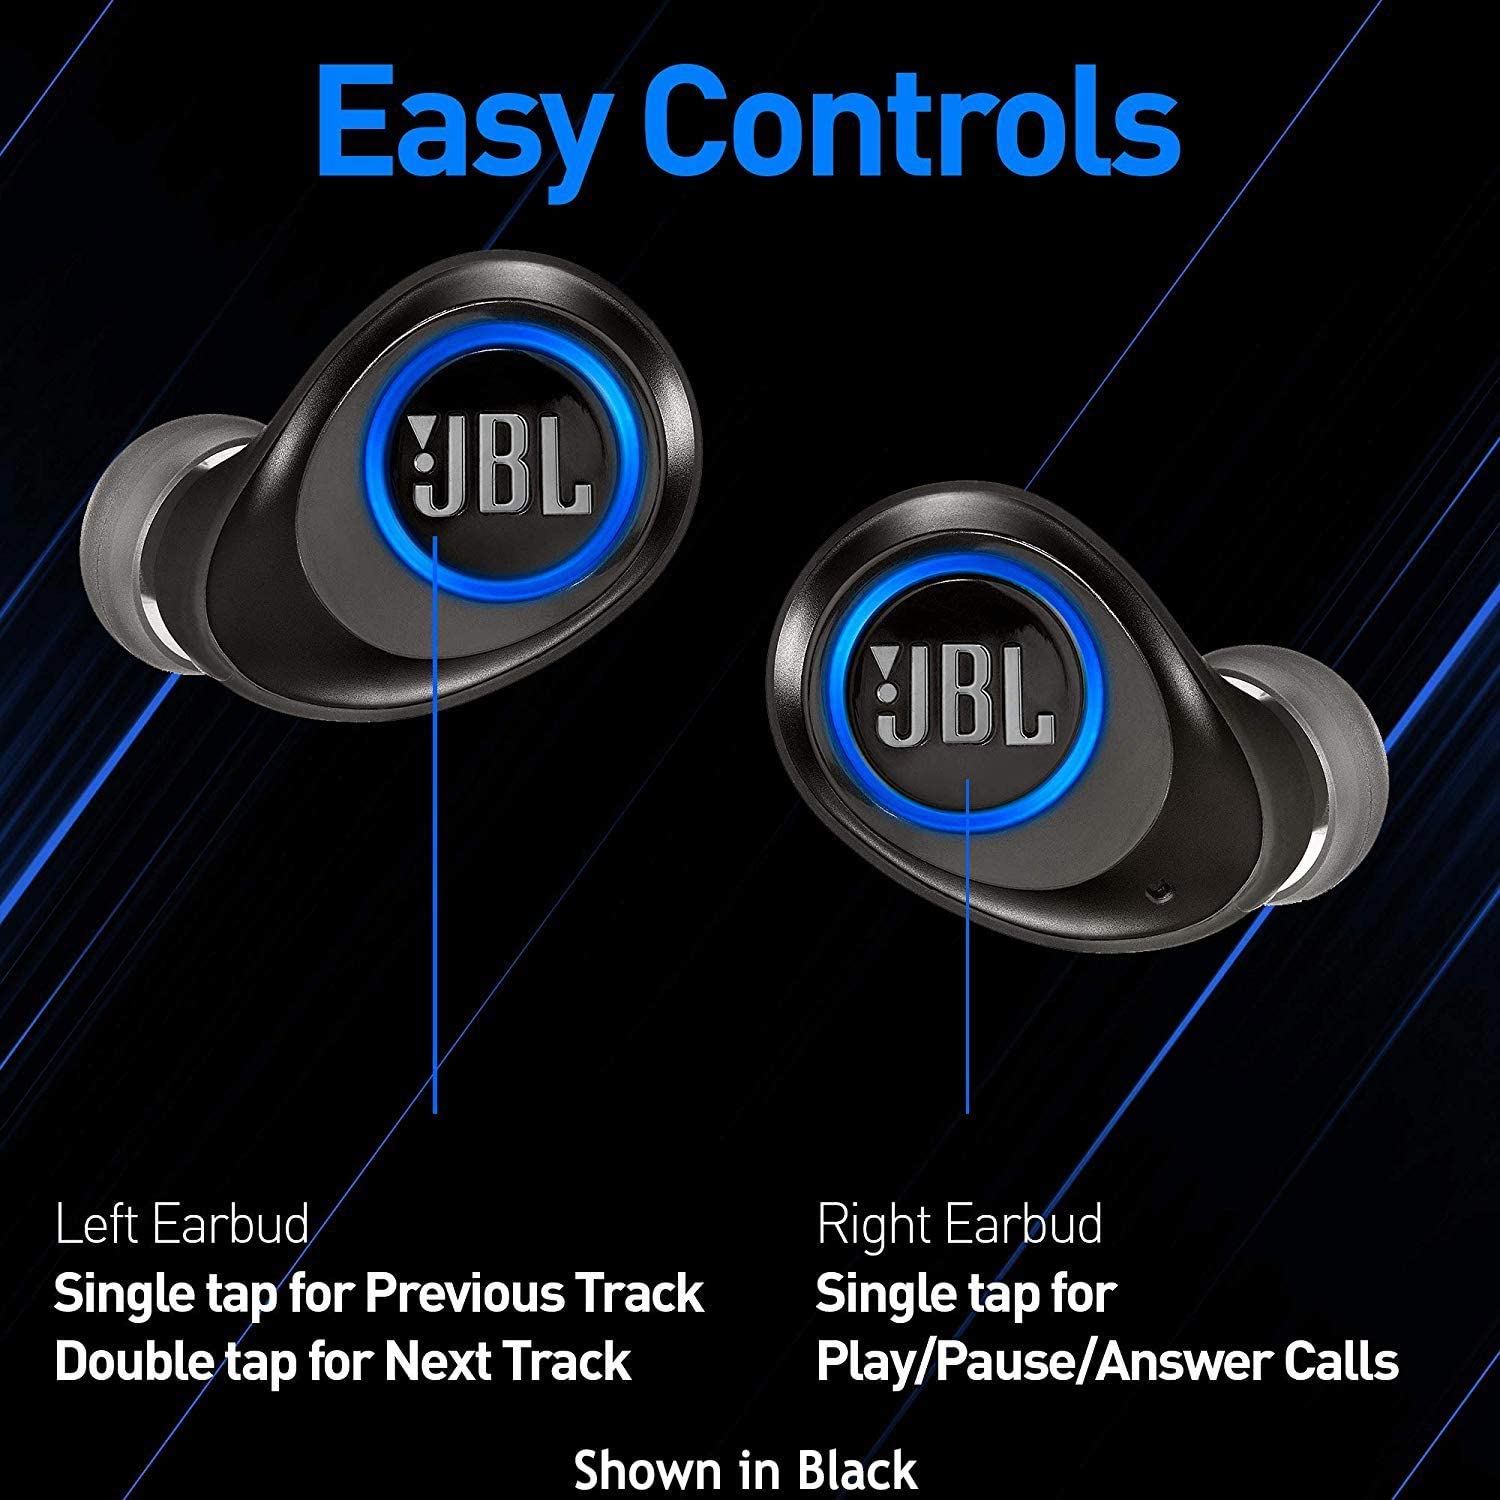 JBL JBLFREEXBLUBTAM-Z  Wireless In-Ear Headphones Blue - Certified Refurbished